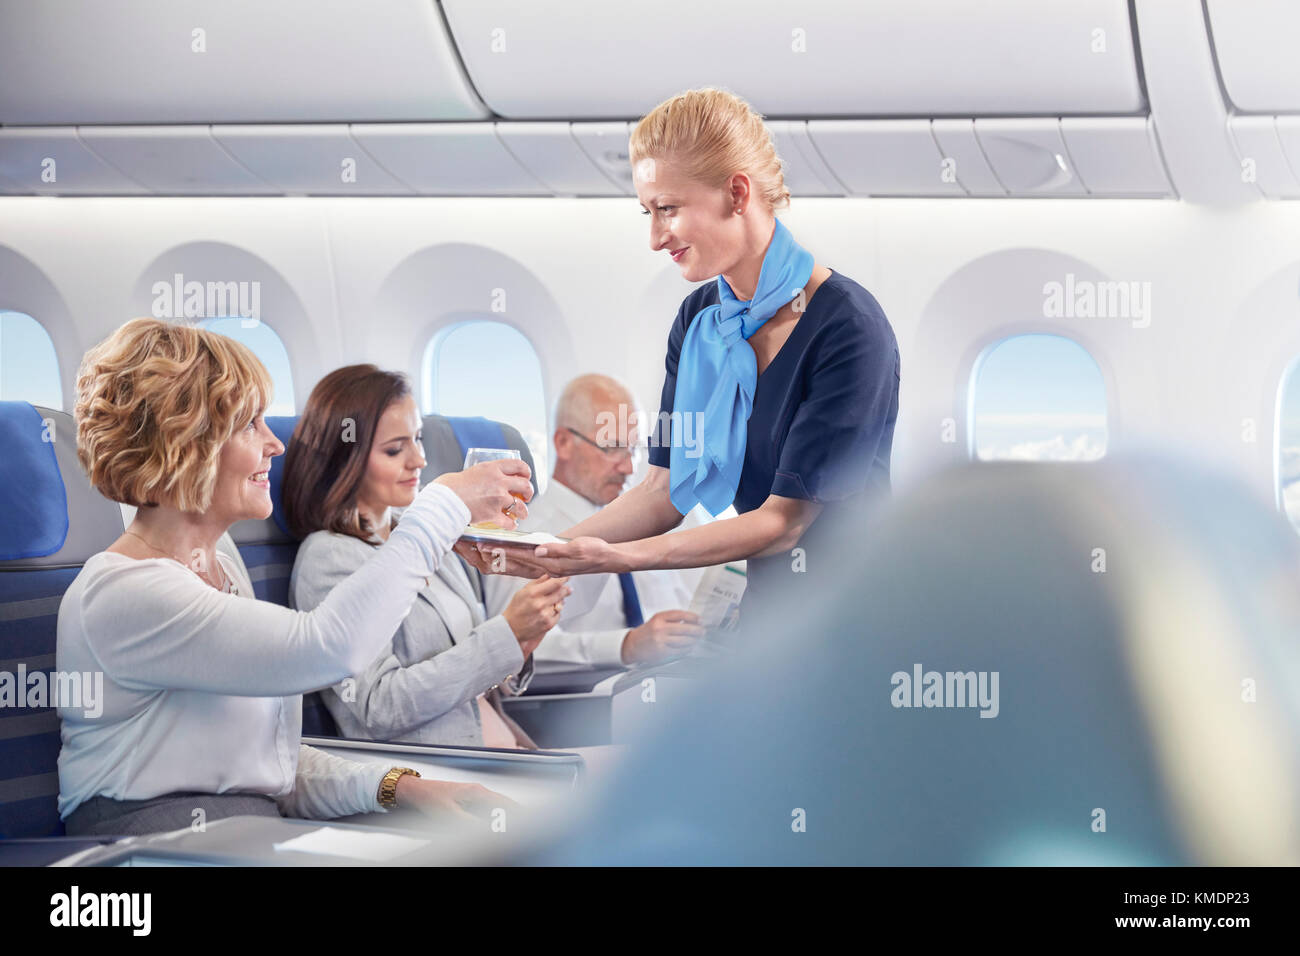 Flugbegleiter serviert der Frau im Flugzeug Getränke Stockfoto